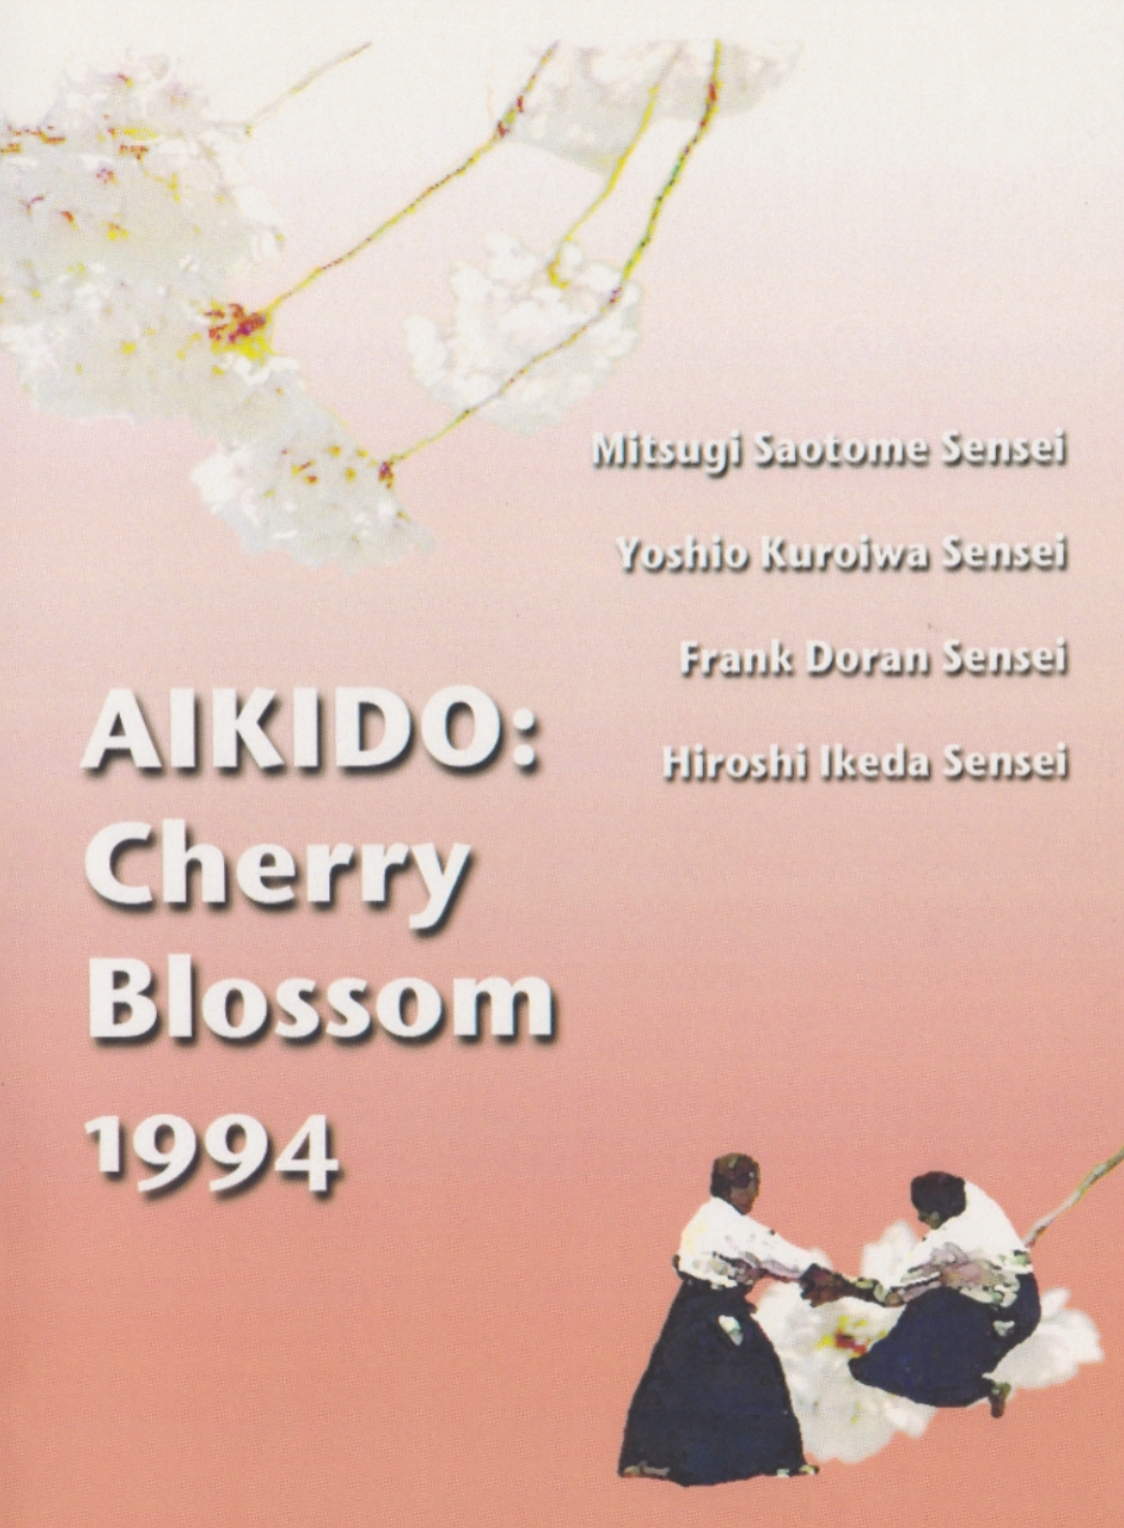 Aikido Cherry Blossom Festival DVD